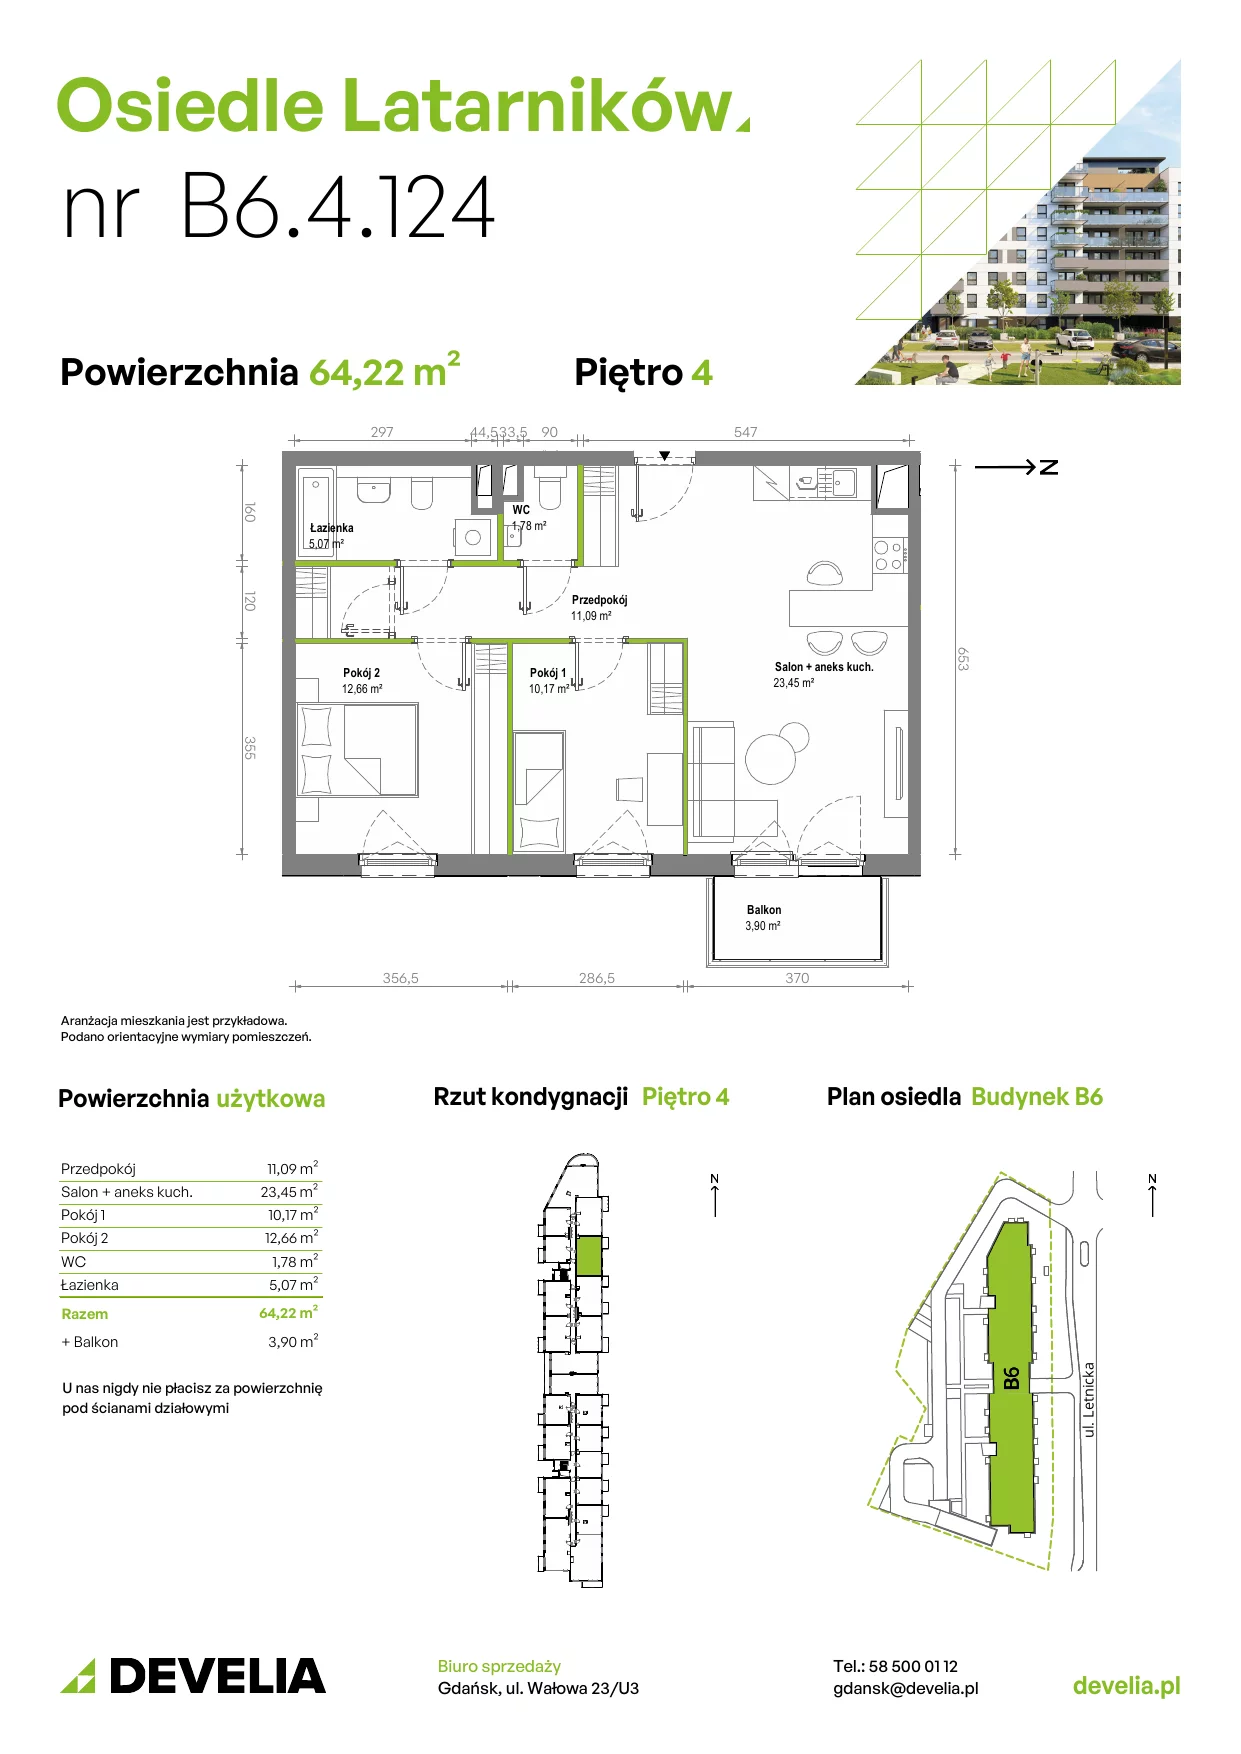 Mieszkanie 64,20 m², piętro 4, oferta nr B6.4.124, Osiedle Latarników, Gdańsk, Letnica, ul. Letnicka 1